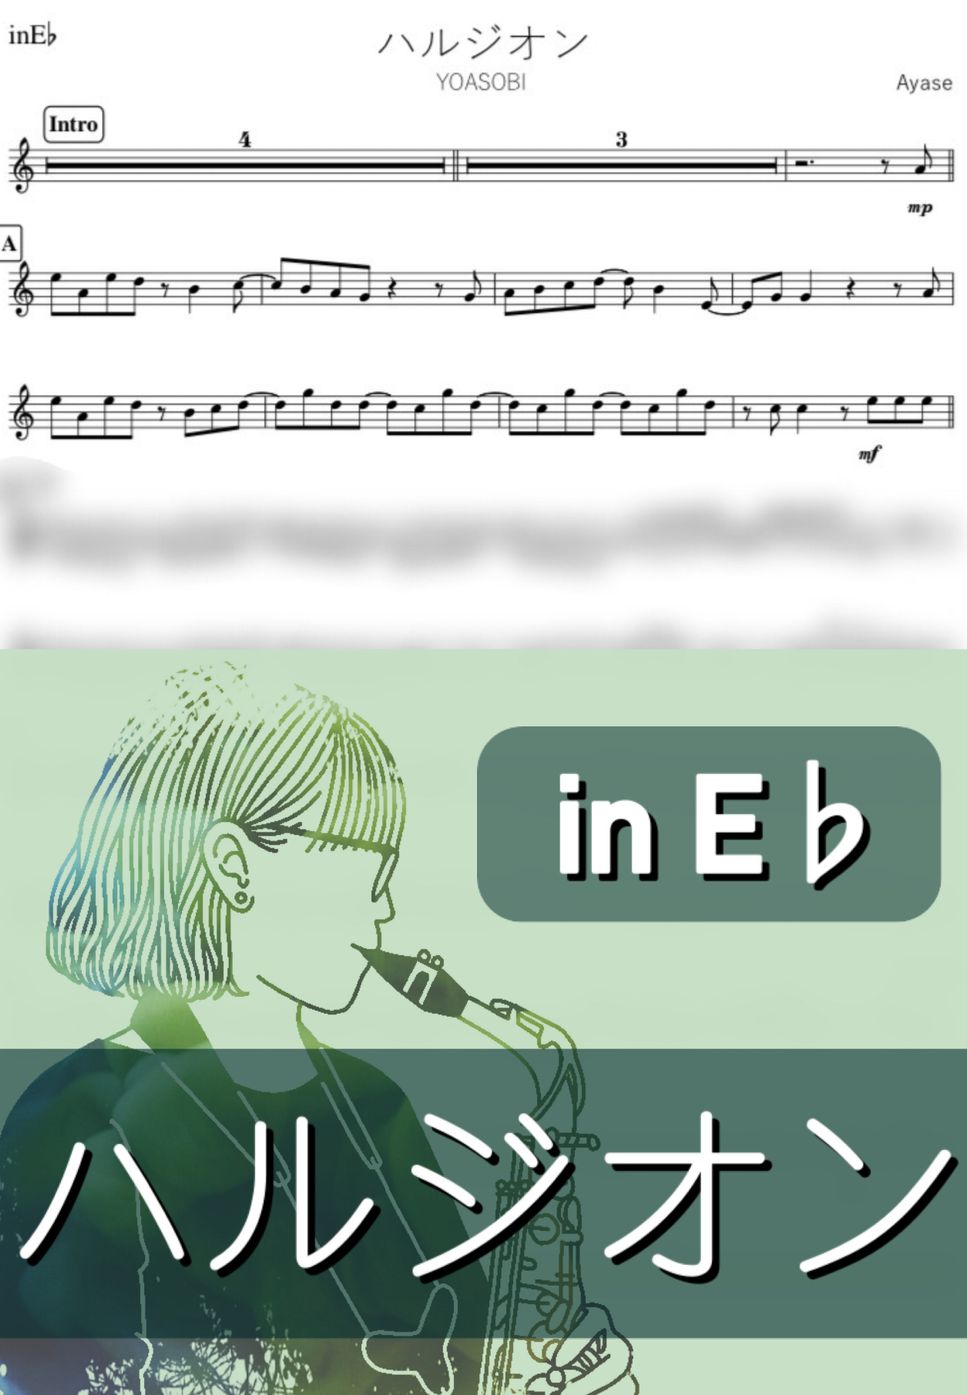 YOASOBI - ハルジオン (E♭) by kanamusic